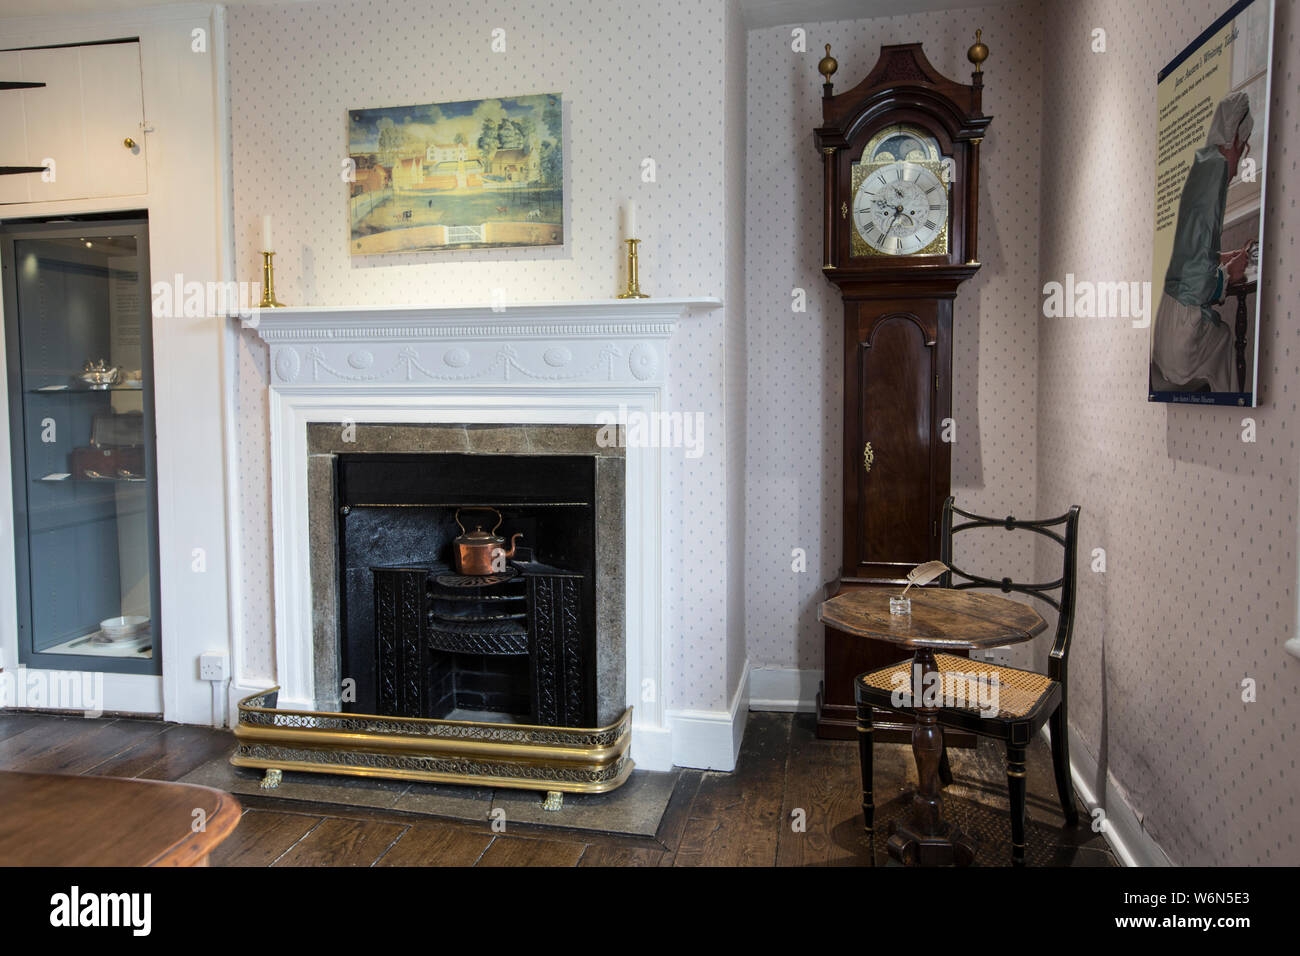 Jane Austen's ehemaliger roter Backstein Haus auf der Chawton Immobilien, Hampshire, England, UK, sie zog dort im Jahr 1809 für die letzten acht Jahre ihres Lebens. Stockfoto